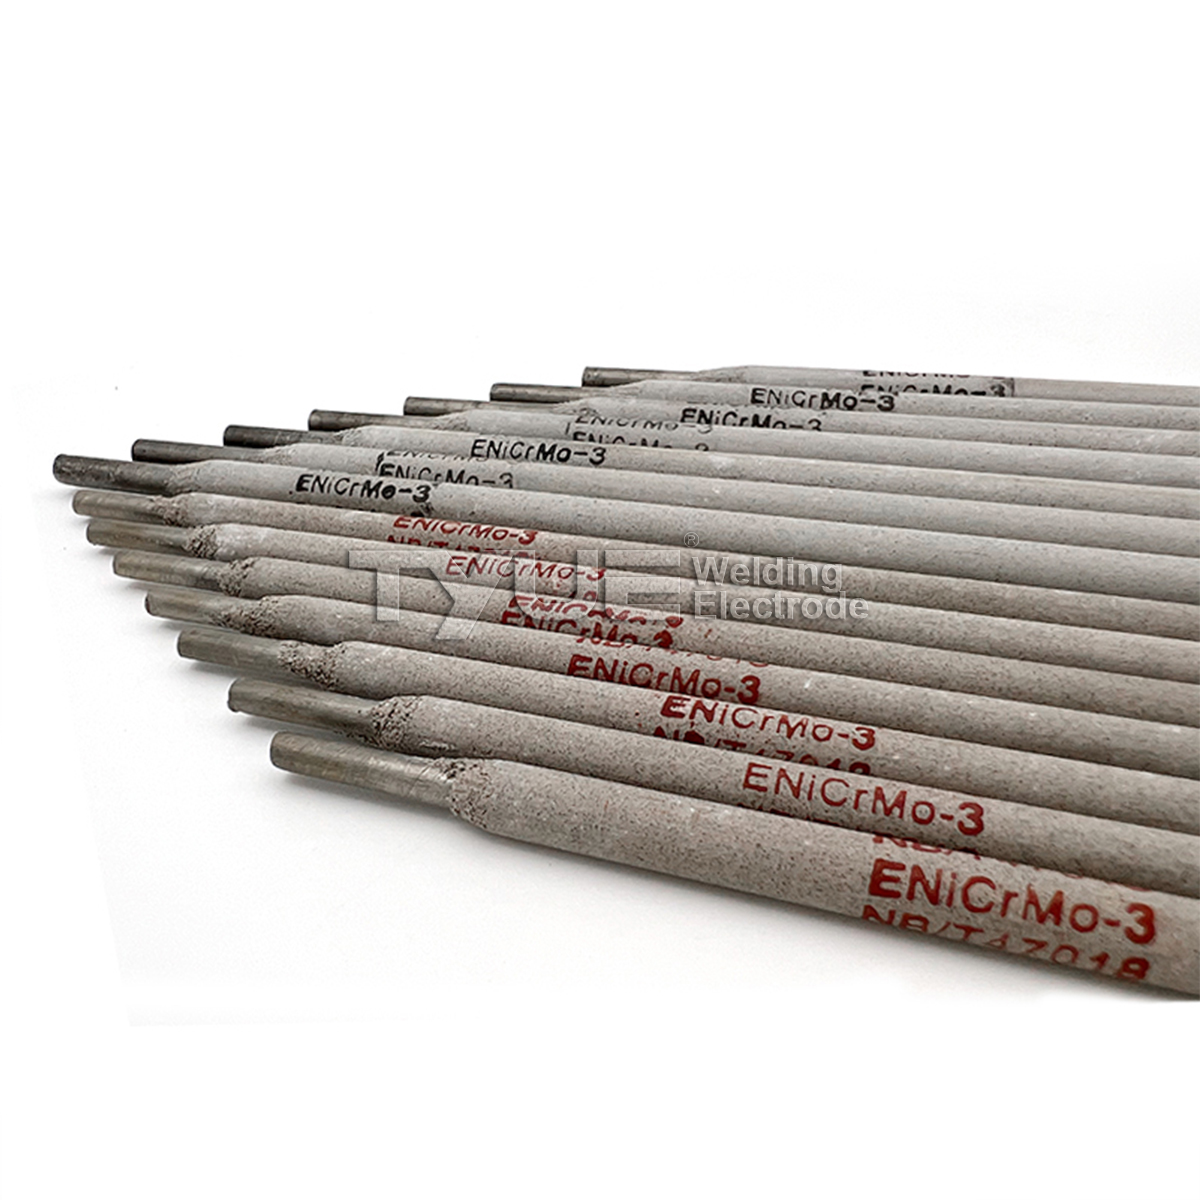 Ni327-3 Stopowe elektrody spawalnicze na bazie niklu, AWS A5.11 ENiCrMo-3 Pręt niklowy do spawania łukowego, najlepszy dostawca materiałów spawalniczych